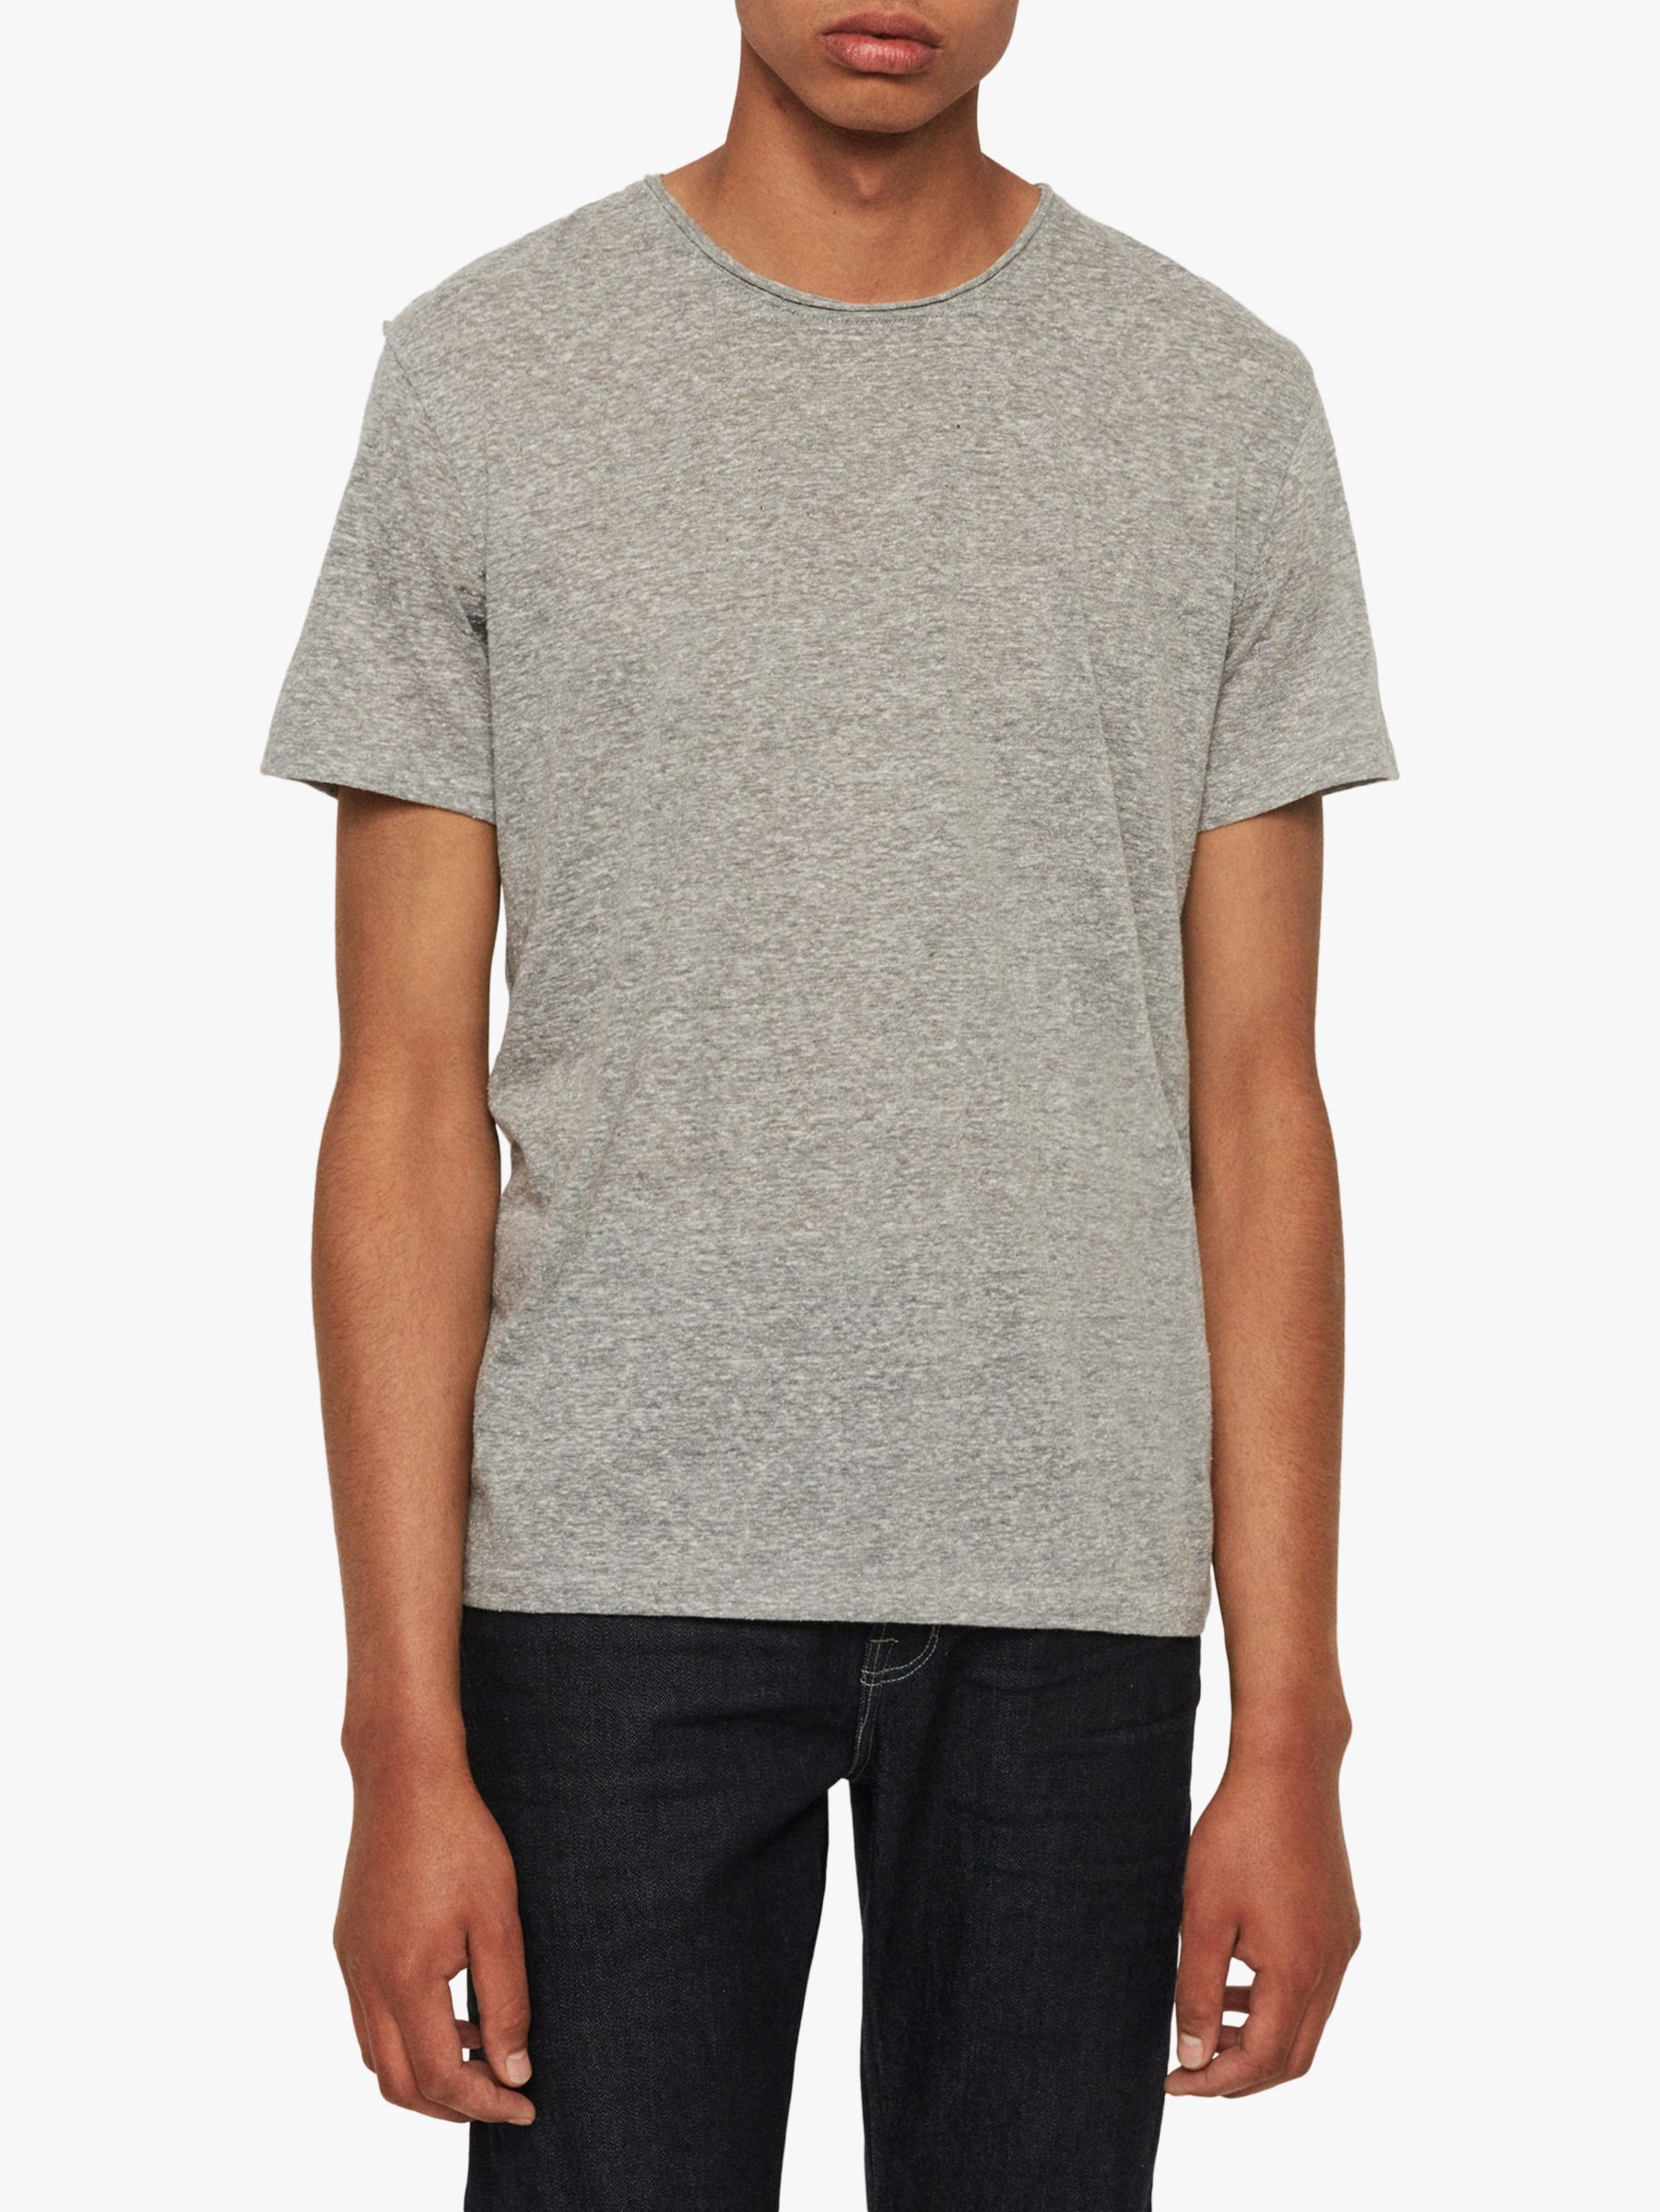 AllSaints Gale T-Shirt, Grey Mouline